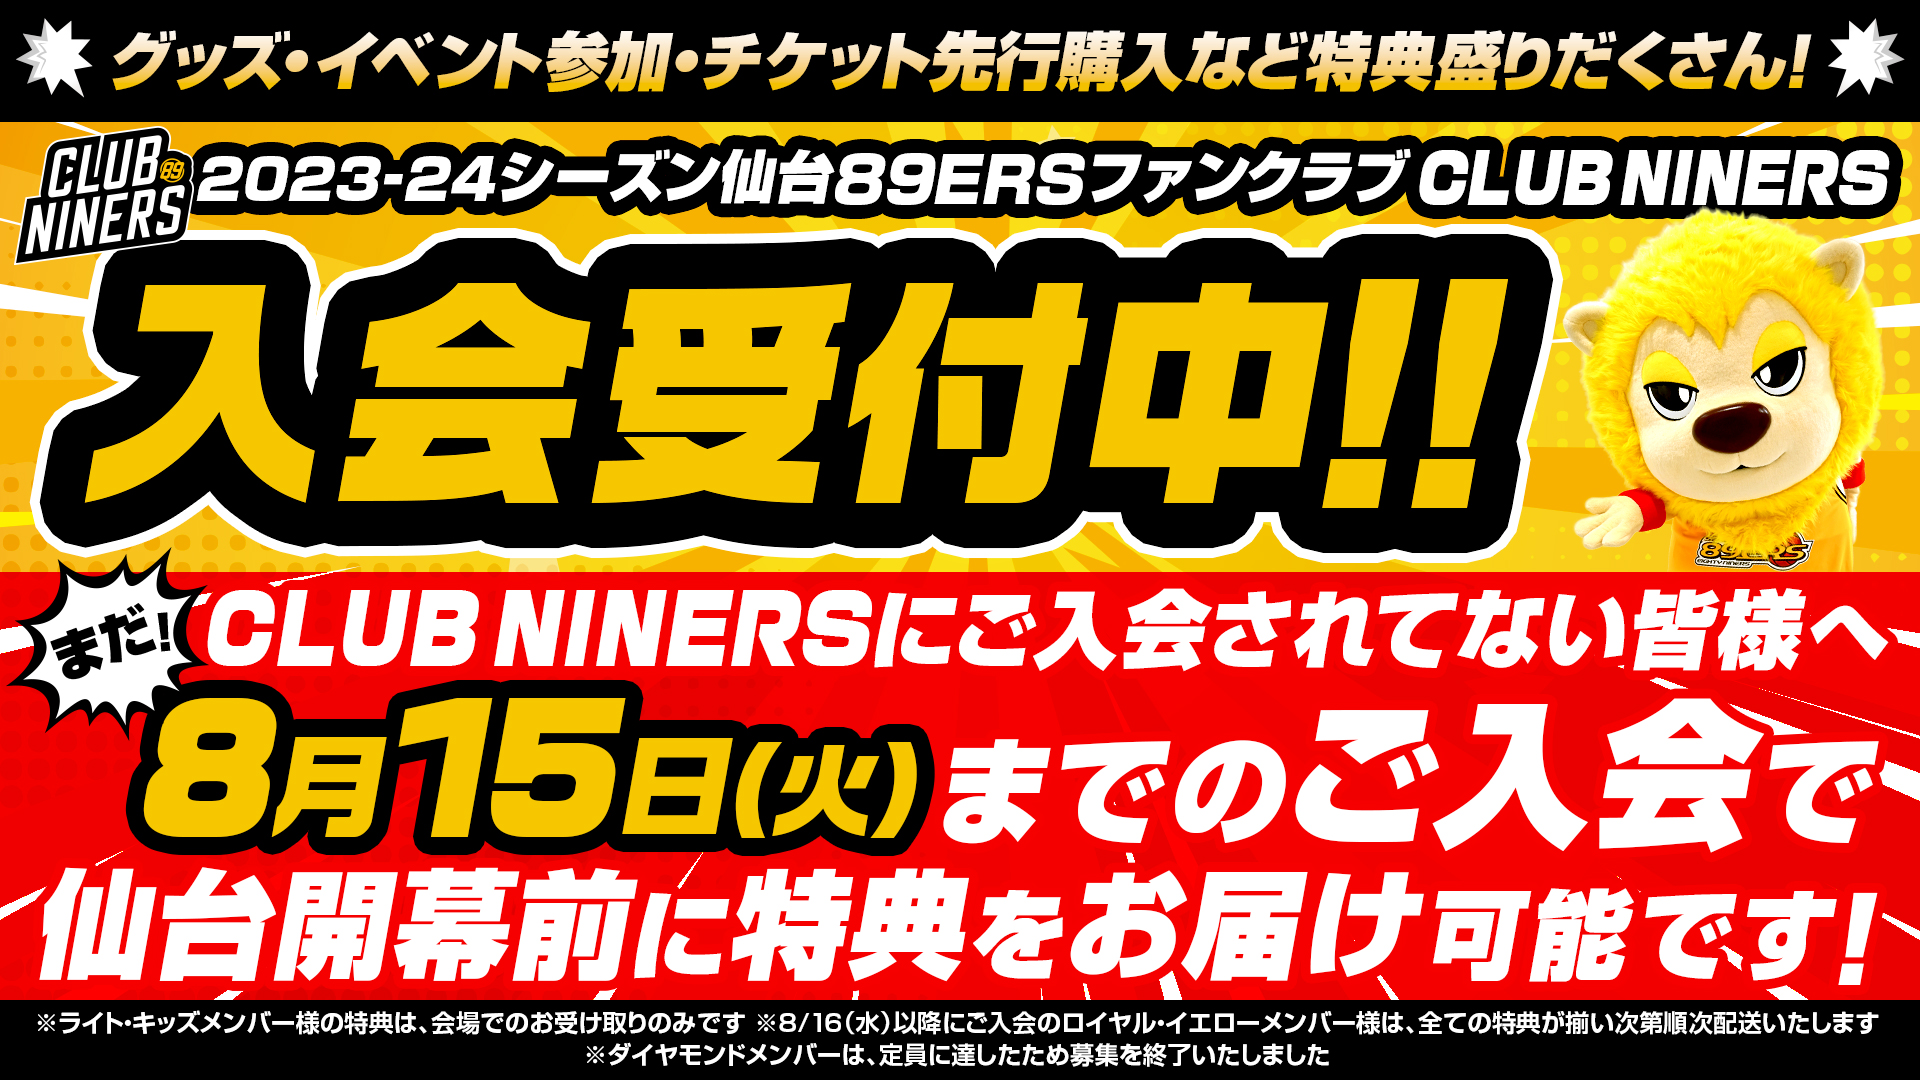 8/19(土)情報更新※【CLUB NINERS】8/15(火)までのご入会で仙台 